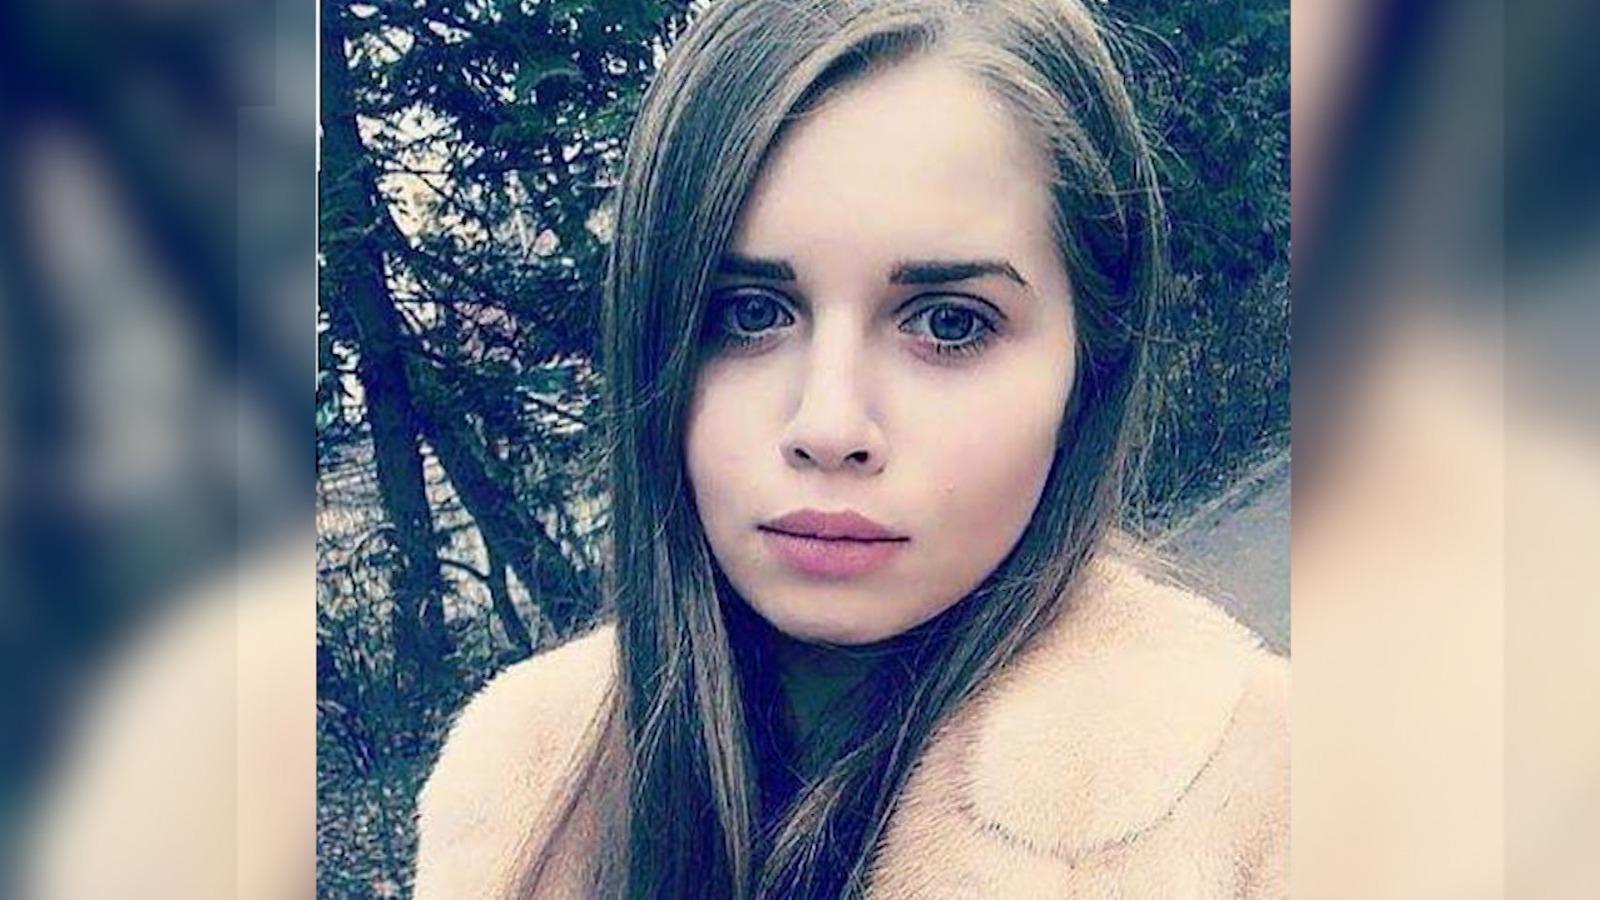 "O să-şi înmormânteze soţia". Andra, tânăra moartă în accidentul dezastruos din Botoşani, era gravidă în 7 luni